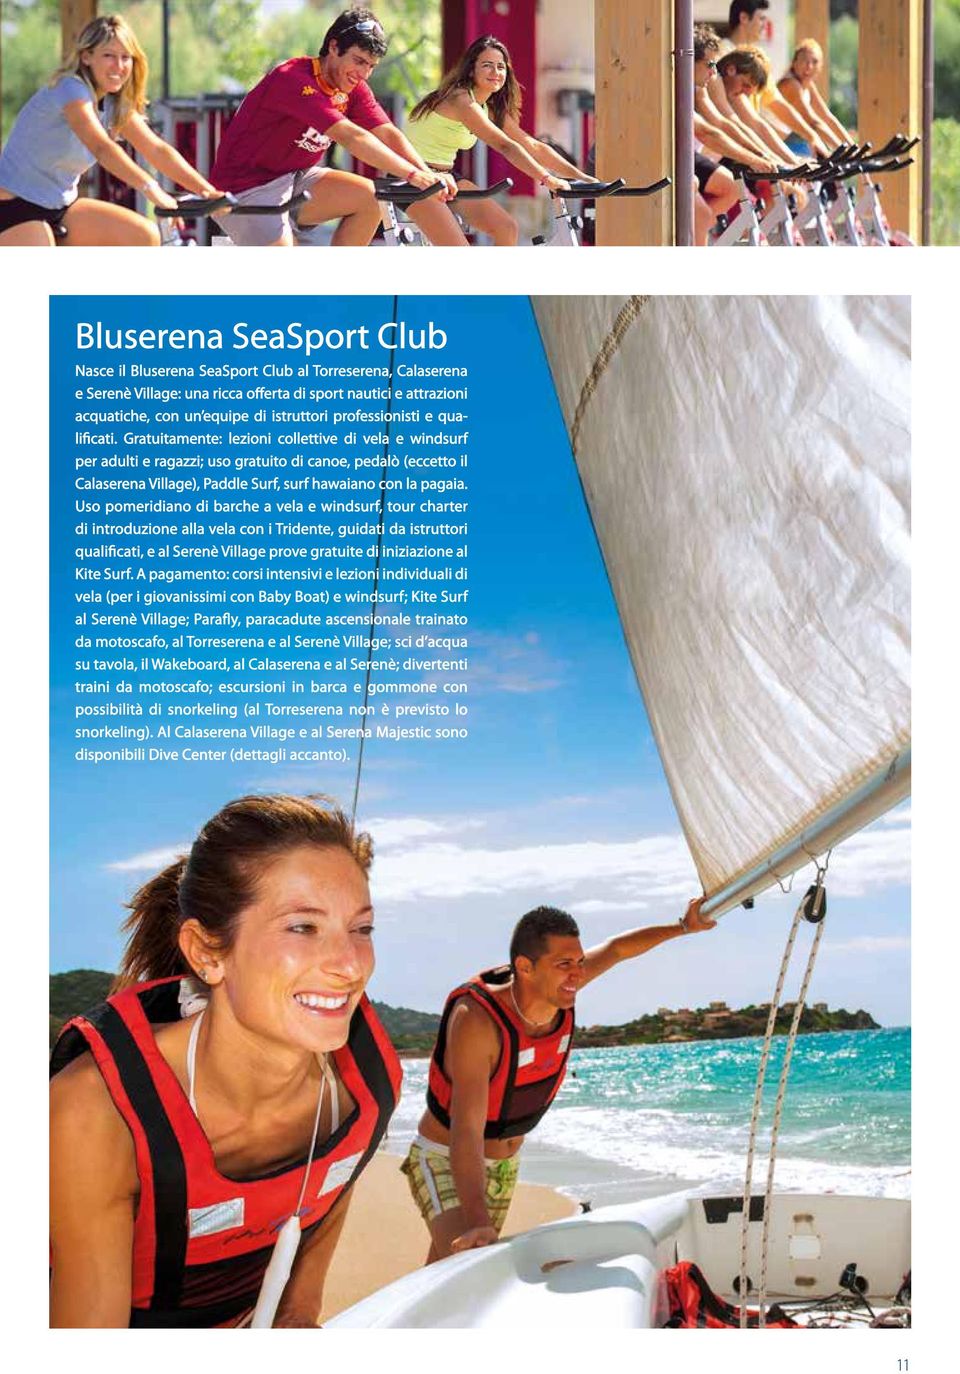 Gratuitamente: lezioni collettive di vela e windsurf per adulti e ragazzi; uso gratuito di canoe, pedalò (eccetto il Calaserena Village), Paddle Surf, surf hawaiano con la pagaia.